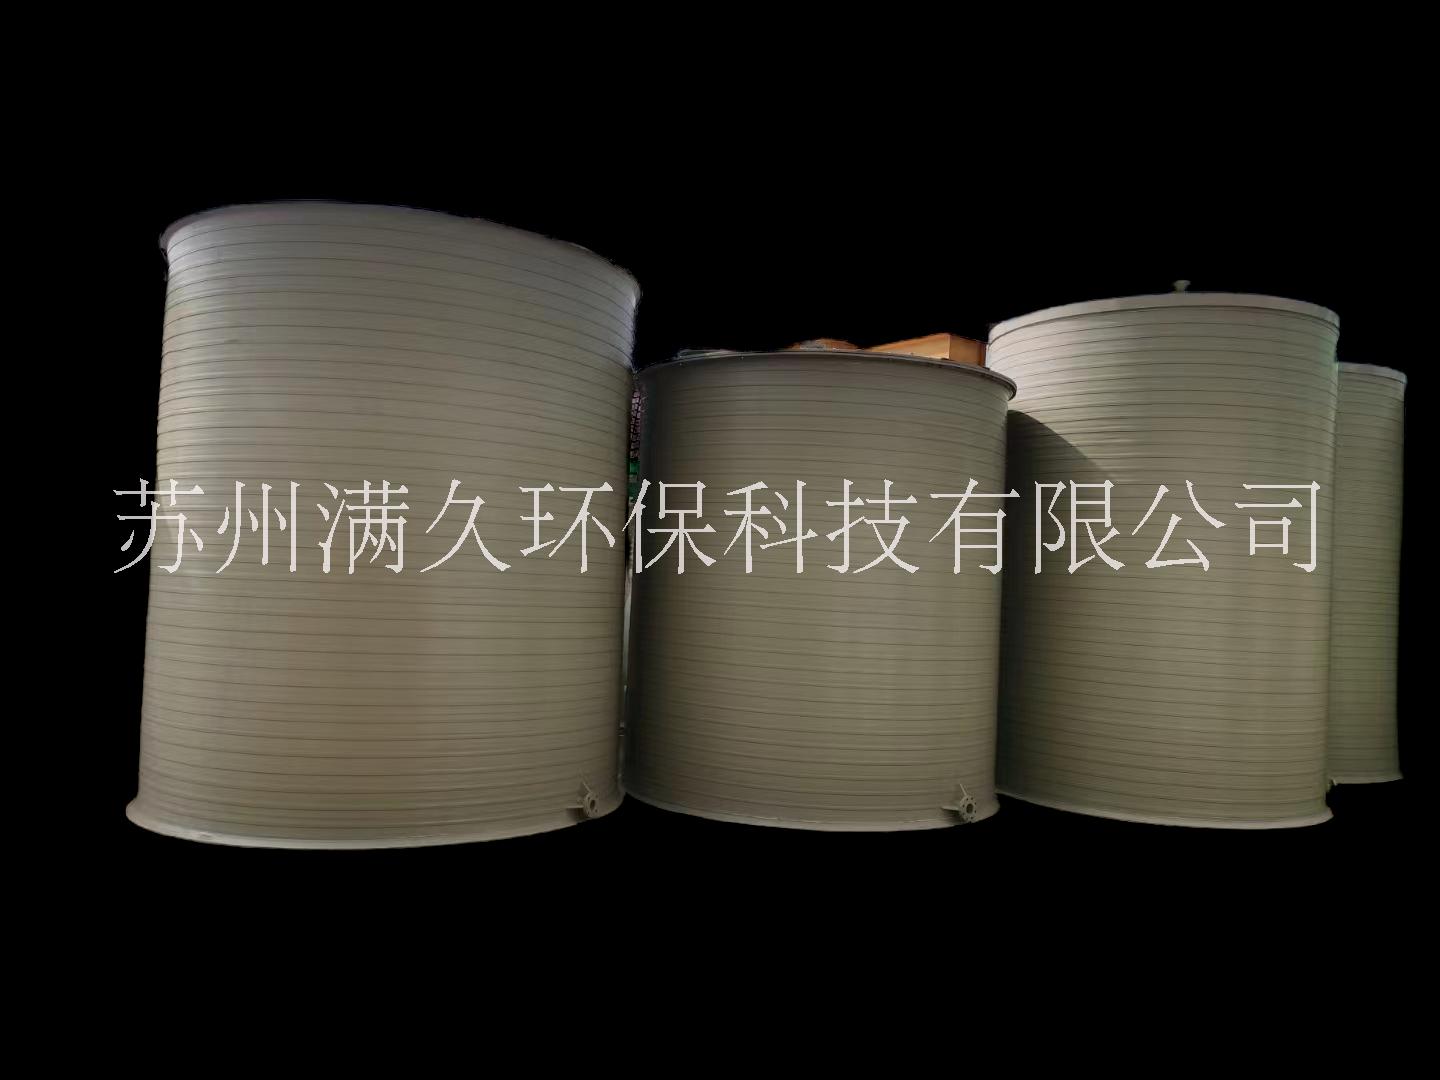 耐腐蚀 盐酸储罐、PPH储罐、PP缠绕储罐满久环保专业生产 聚丙烯储罐图片